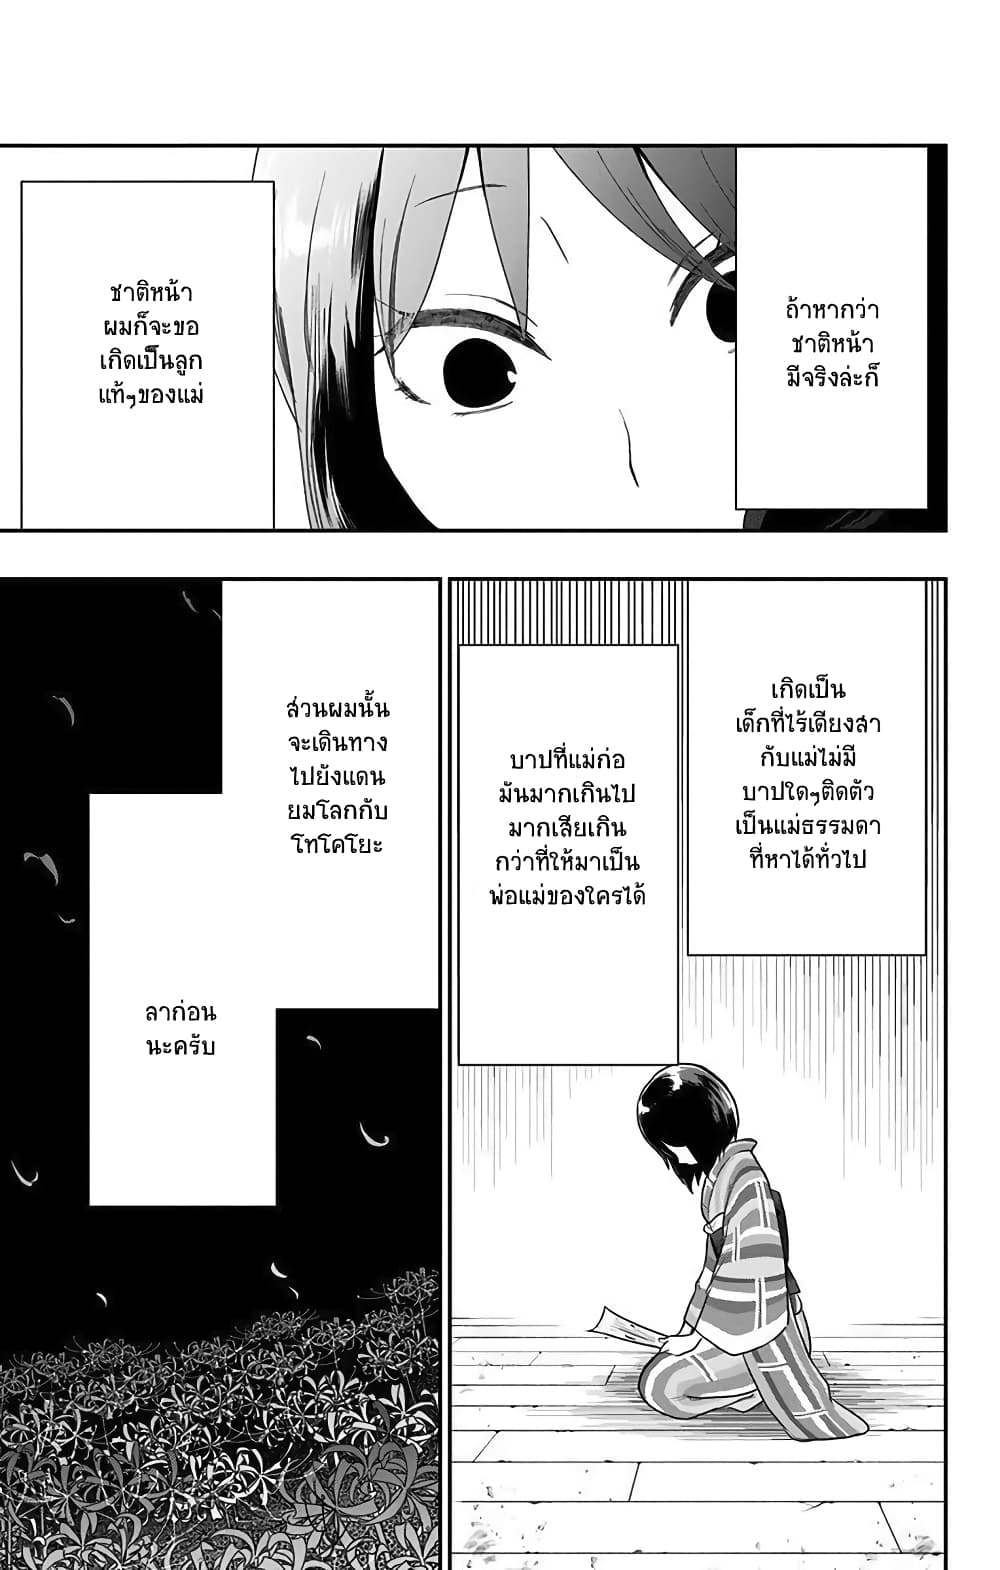 Shouwa Otome Otogibanashi เรื่องเล่าของสาวน้อย ยุคโชวะ ตอนที่ 24 (11)